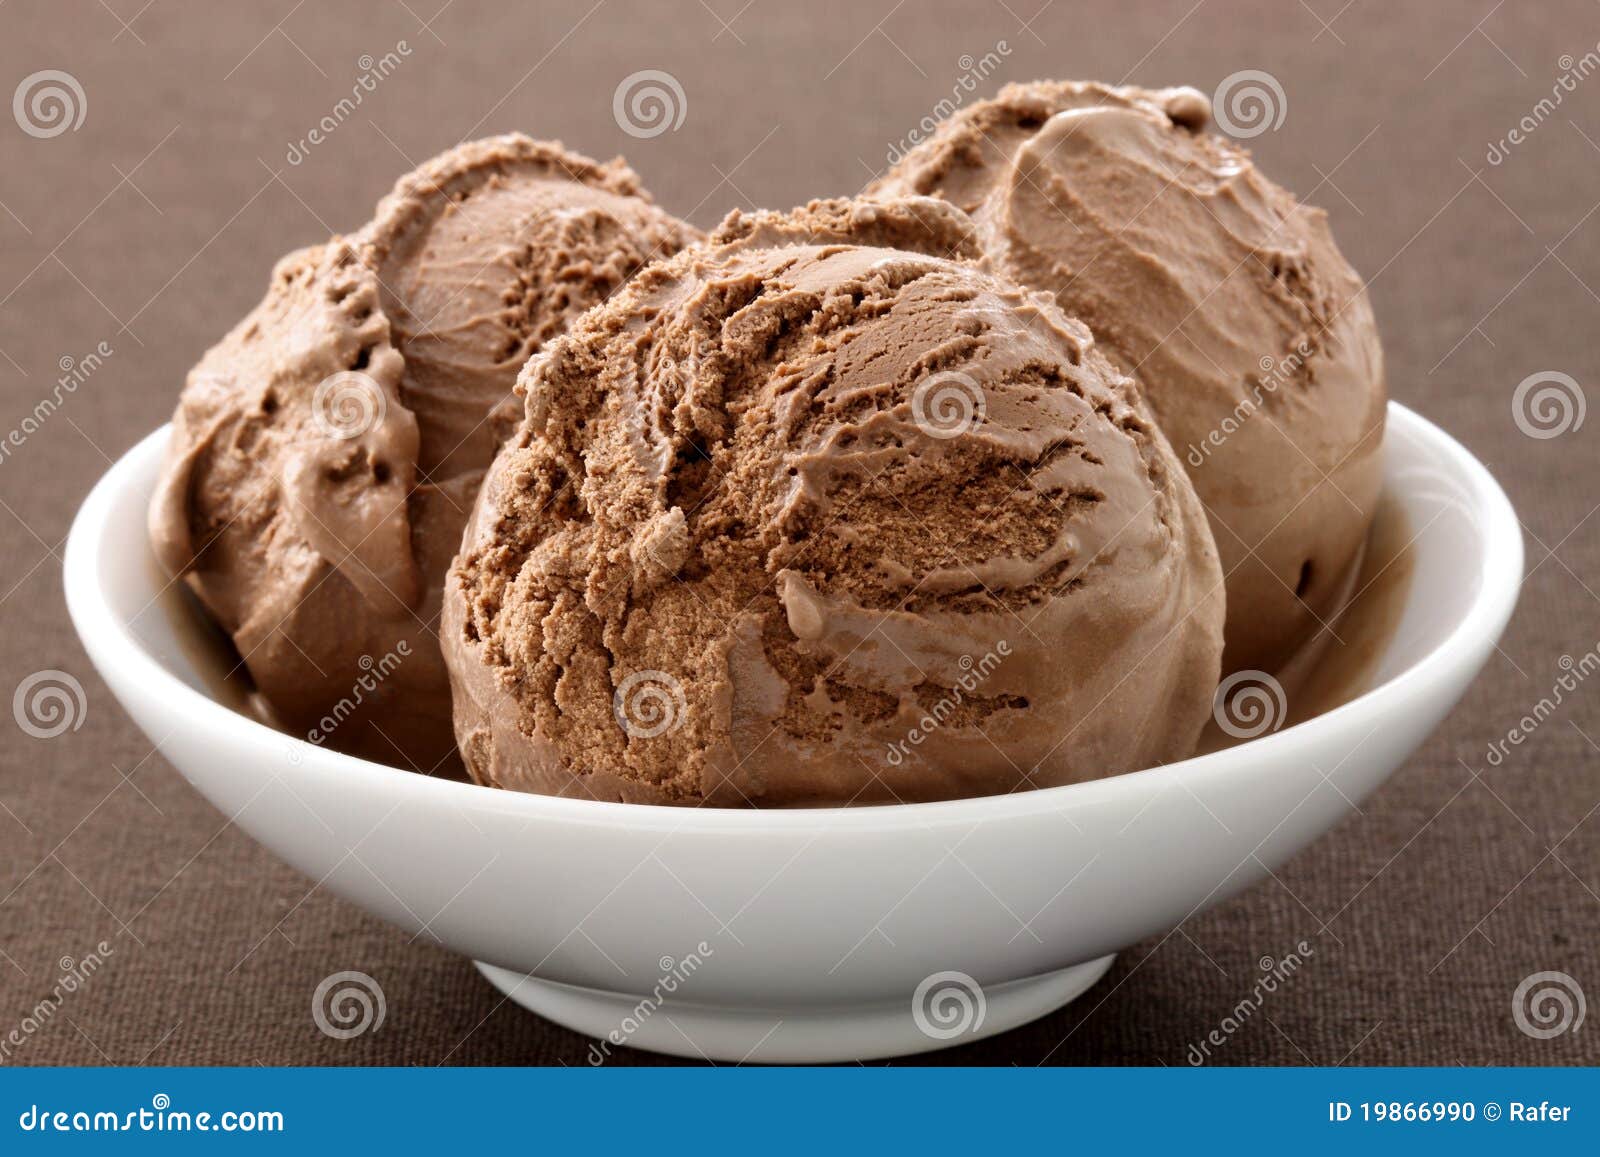 delicious gourmet chocolate ice cream,